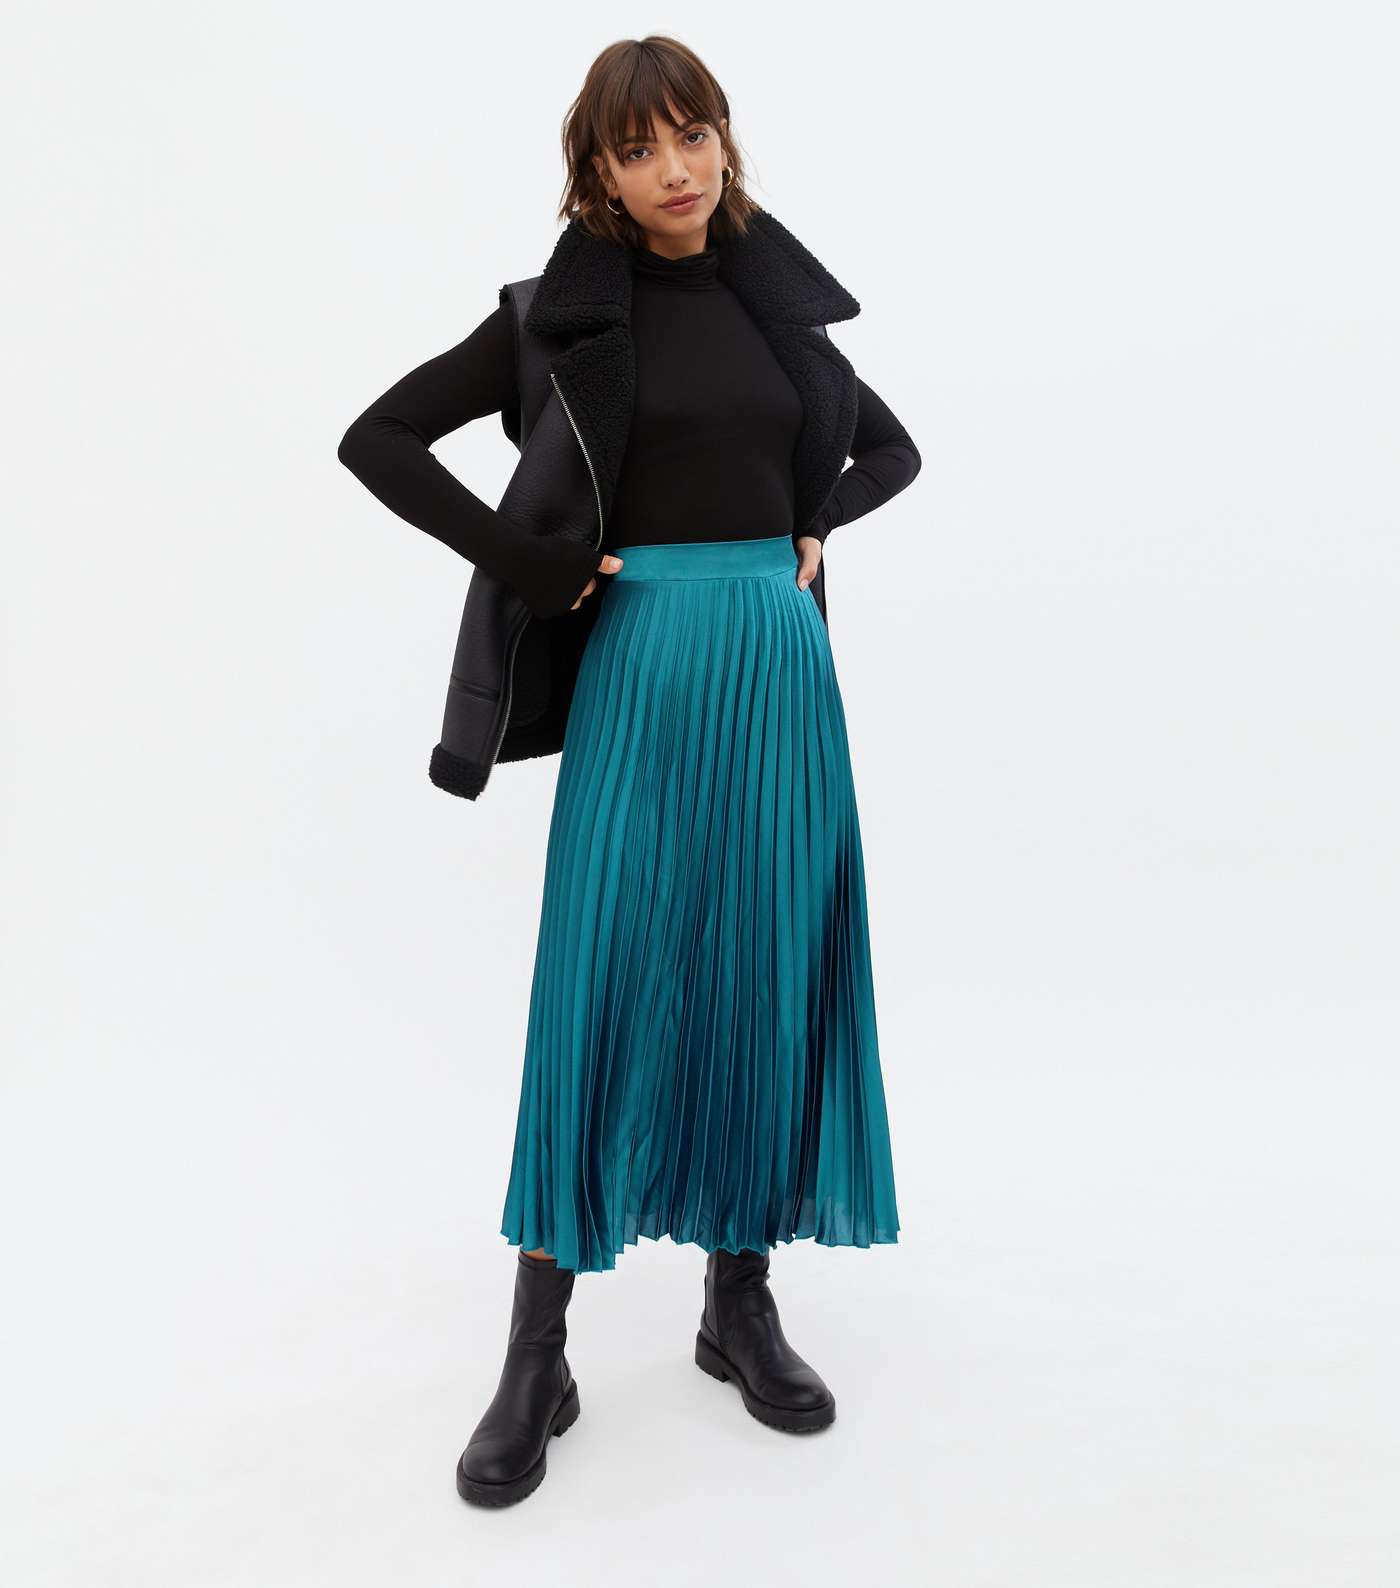 Teal Satin High Waist Pleated Midi Skirt Image 2